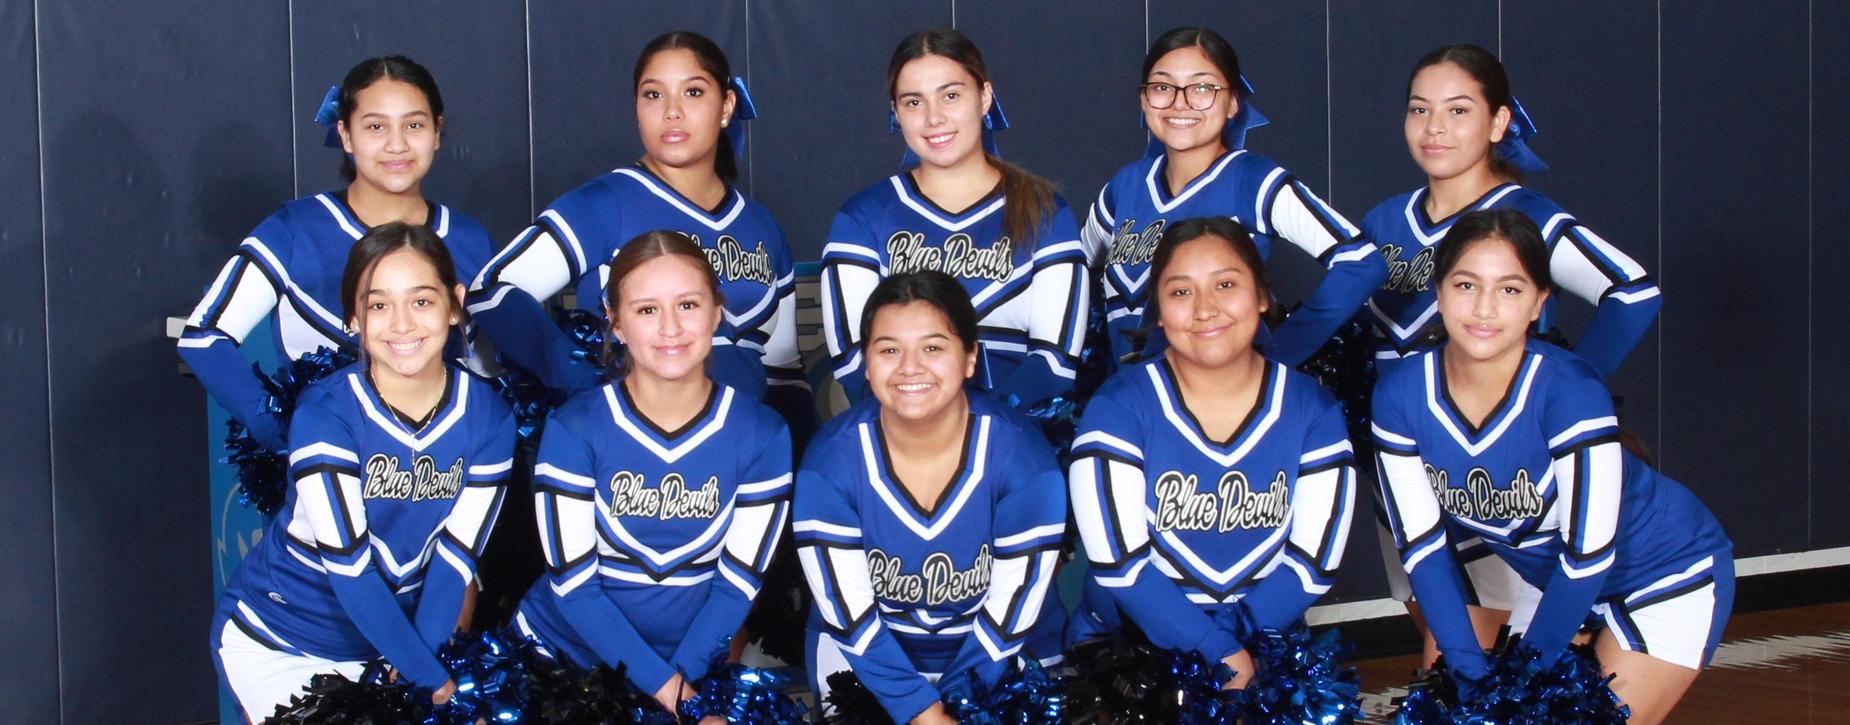 A group of high school cheerleaders